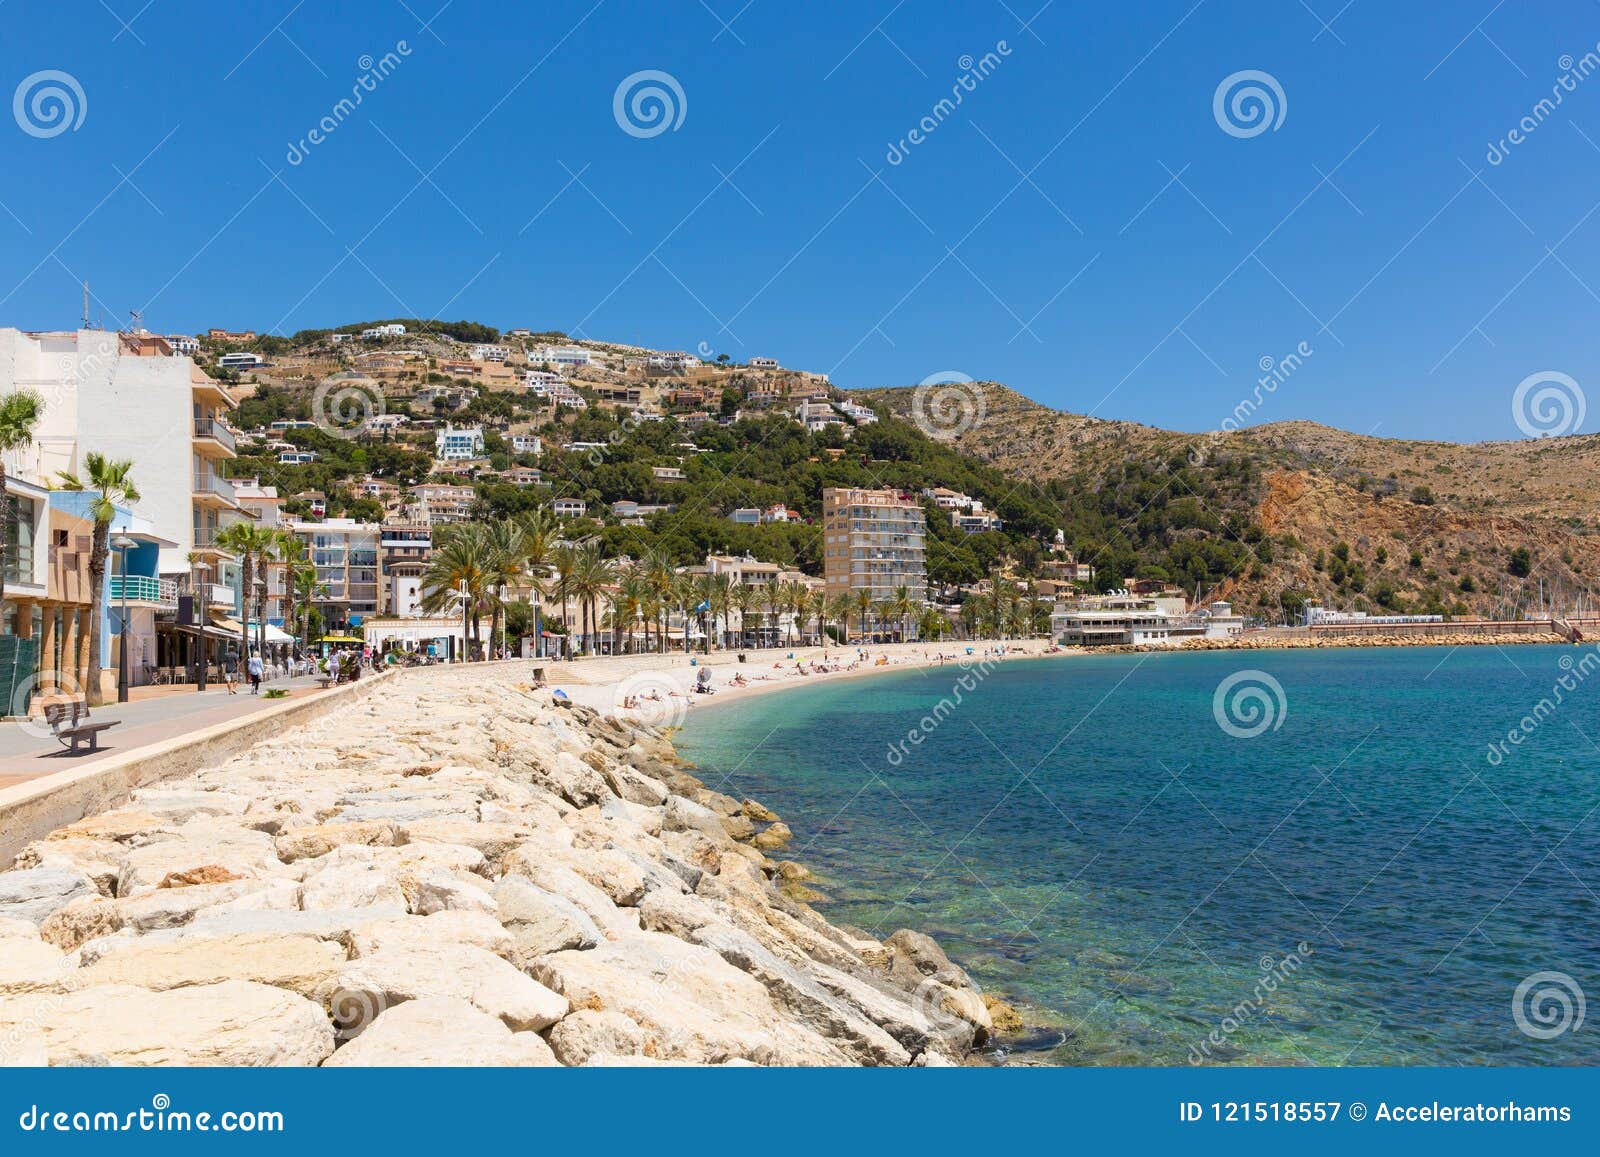 jÃÂ¡vea spain beautiful spanish town with platja de la grava beach located south-east of denia